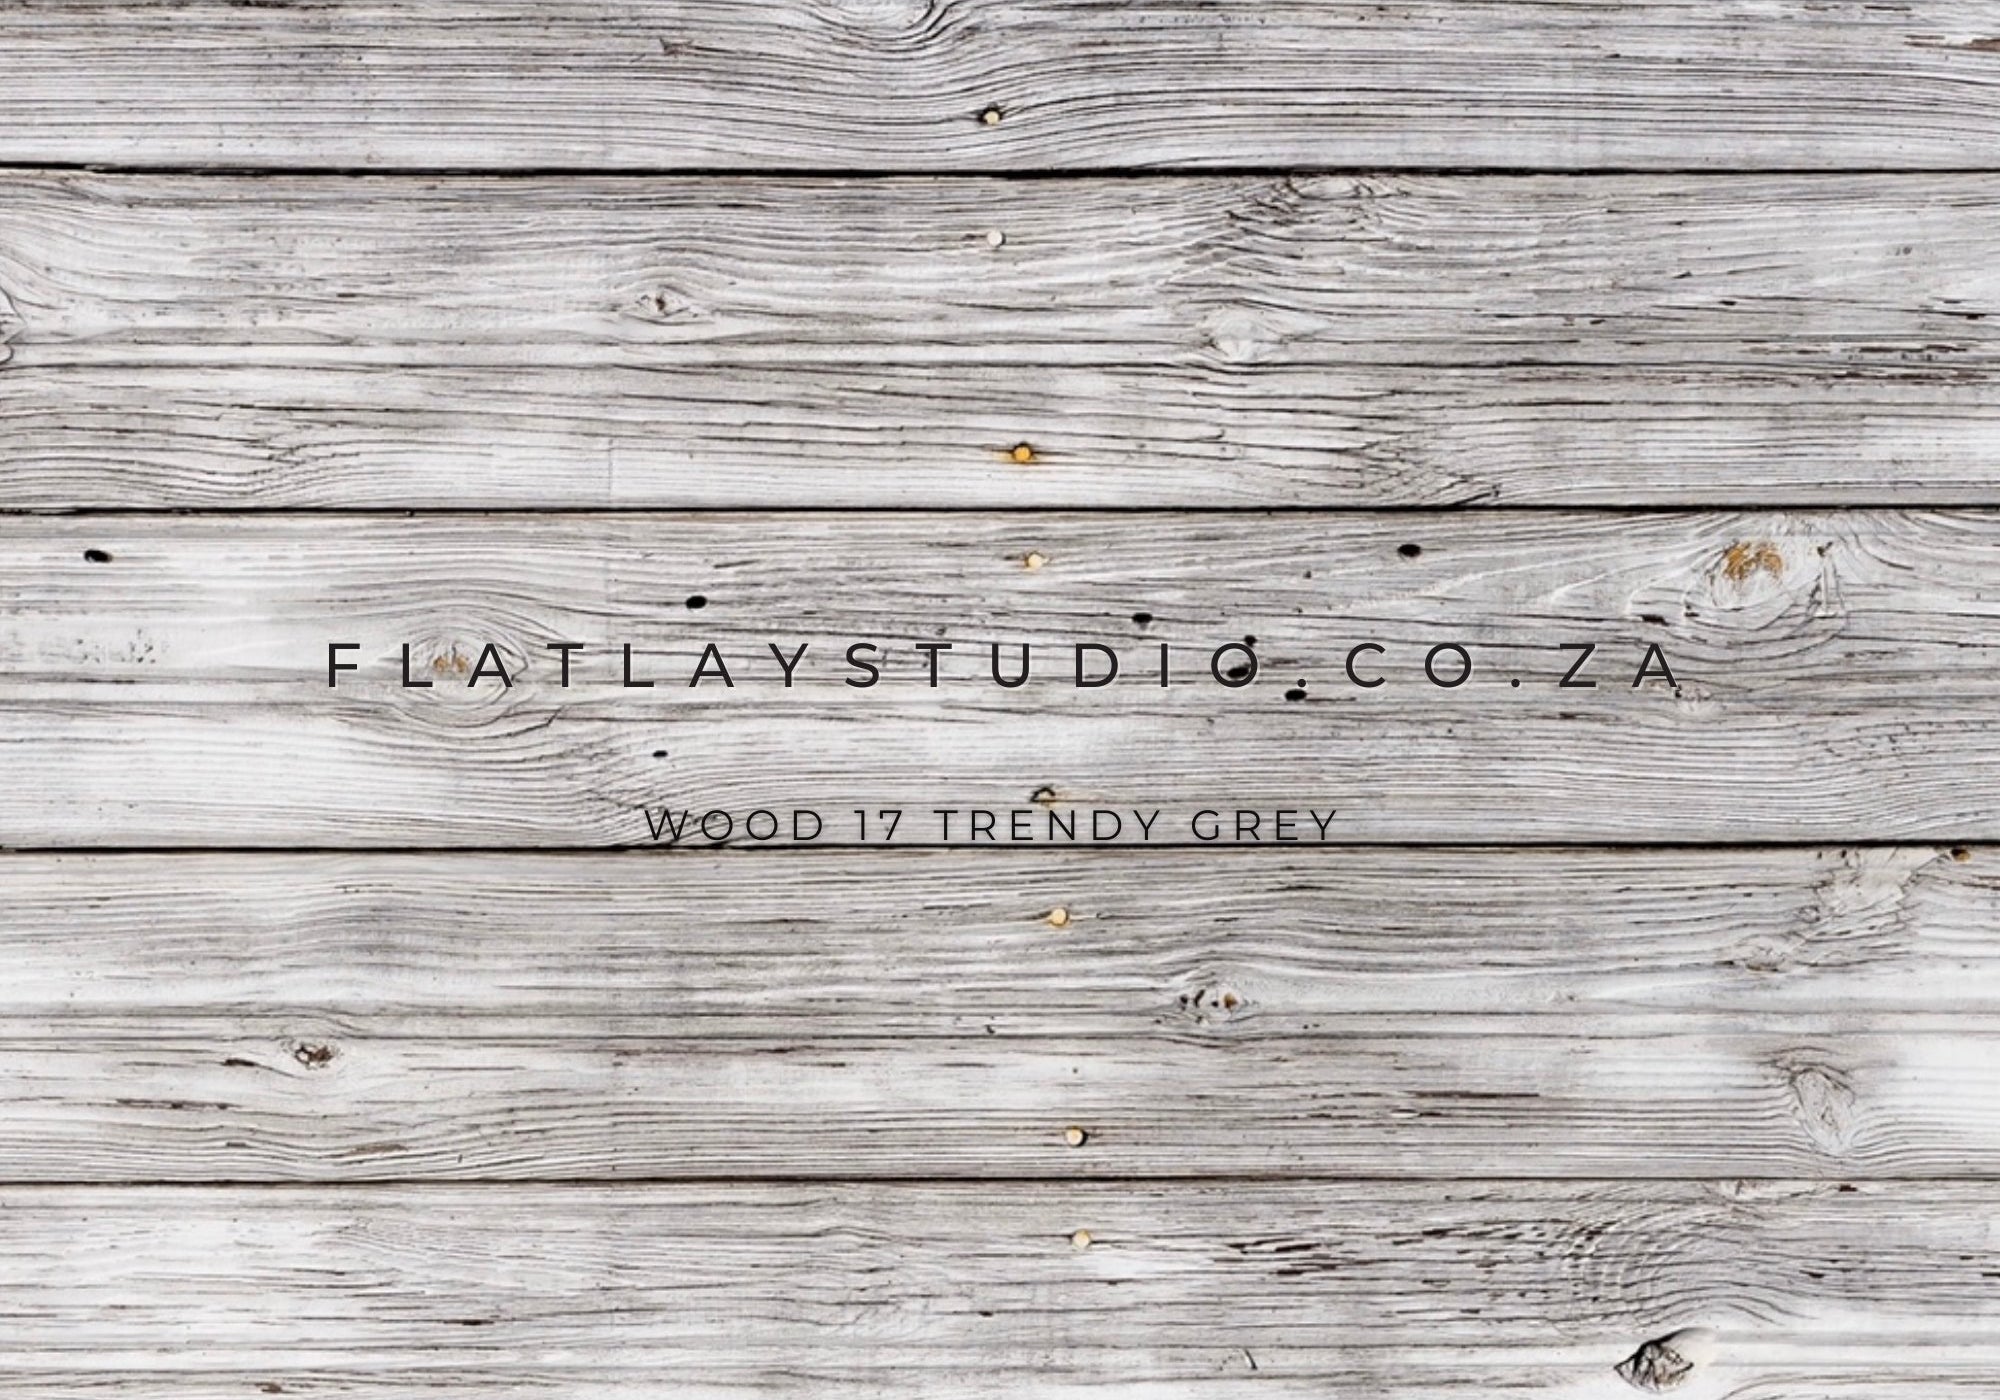 Wood 17 Trendy Grey - FlatlayStudio